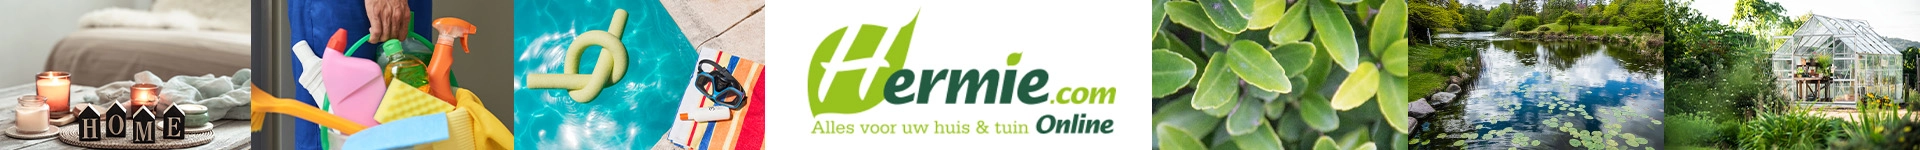 Hermie.com - Alles voor uw huis & tuin online!s achtergrond